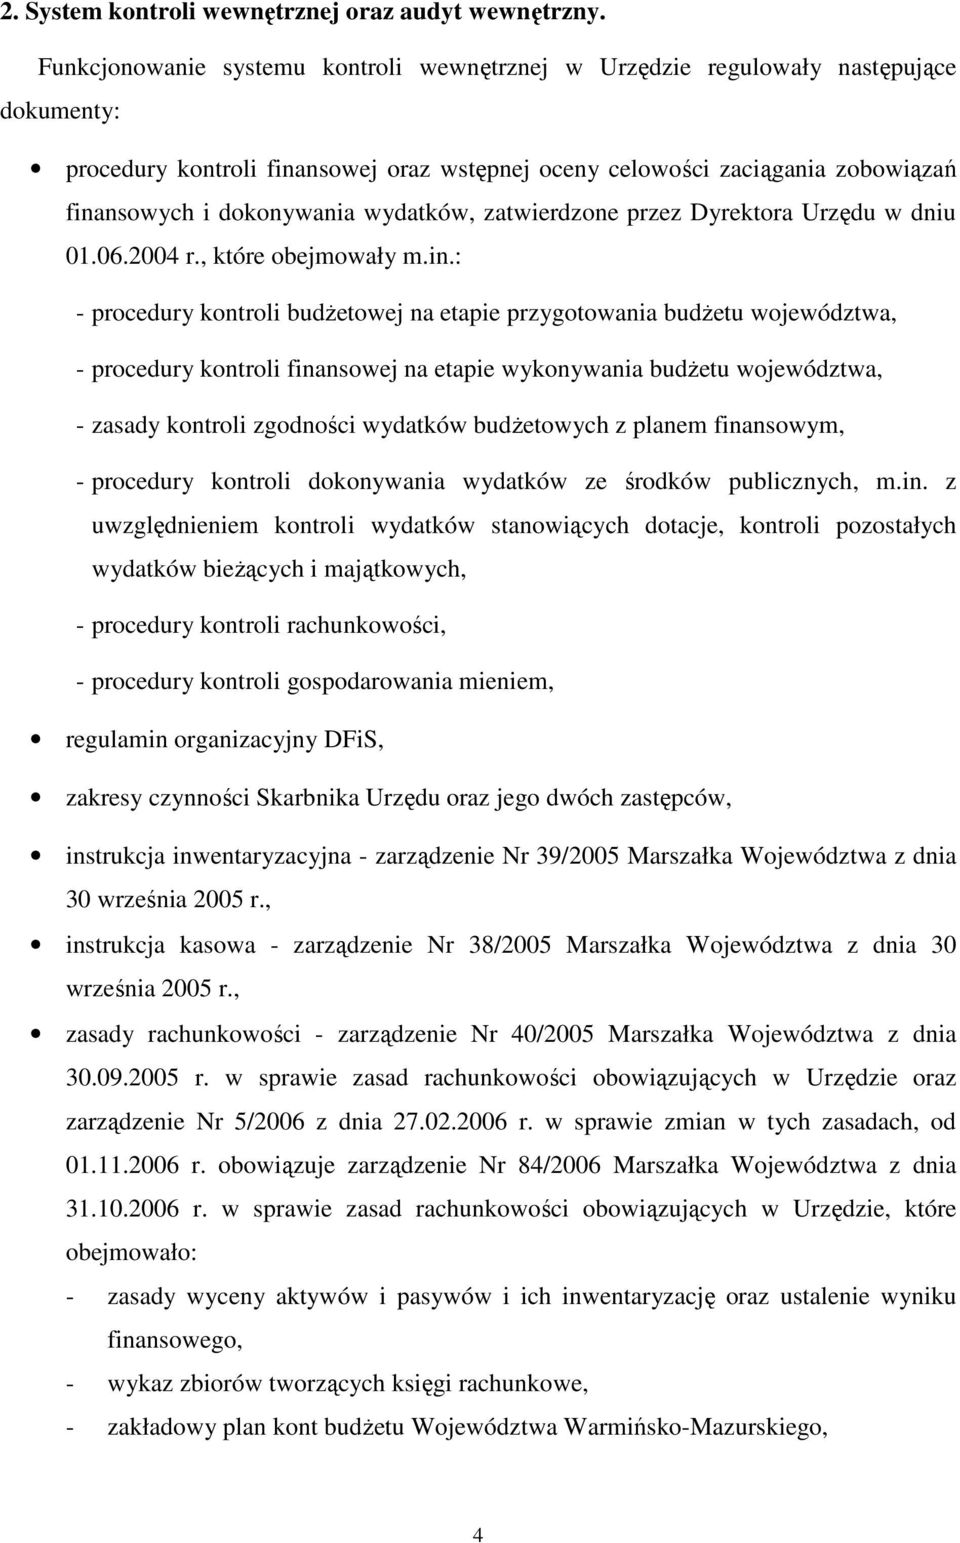 wydatków, zatwierdzone przez Dyrektora Urzędu w dniu 01.06.2004 r., które obejmowały m.in.